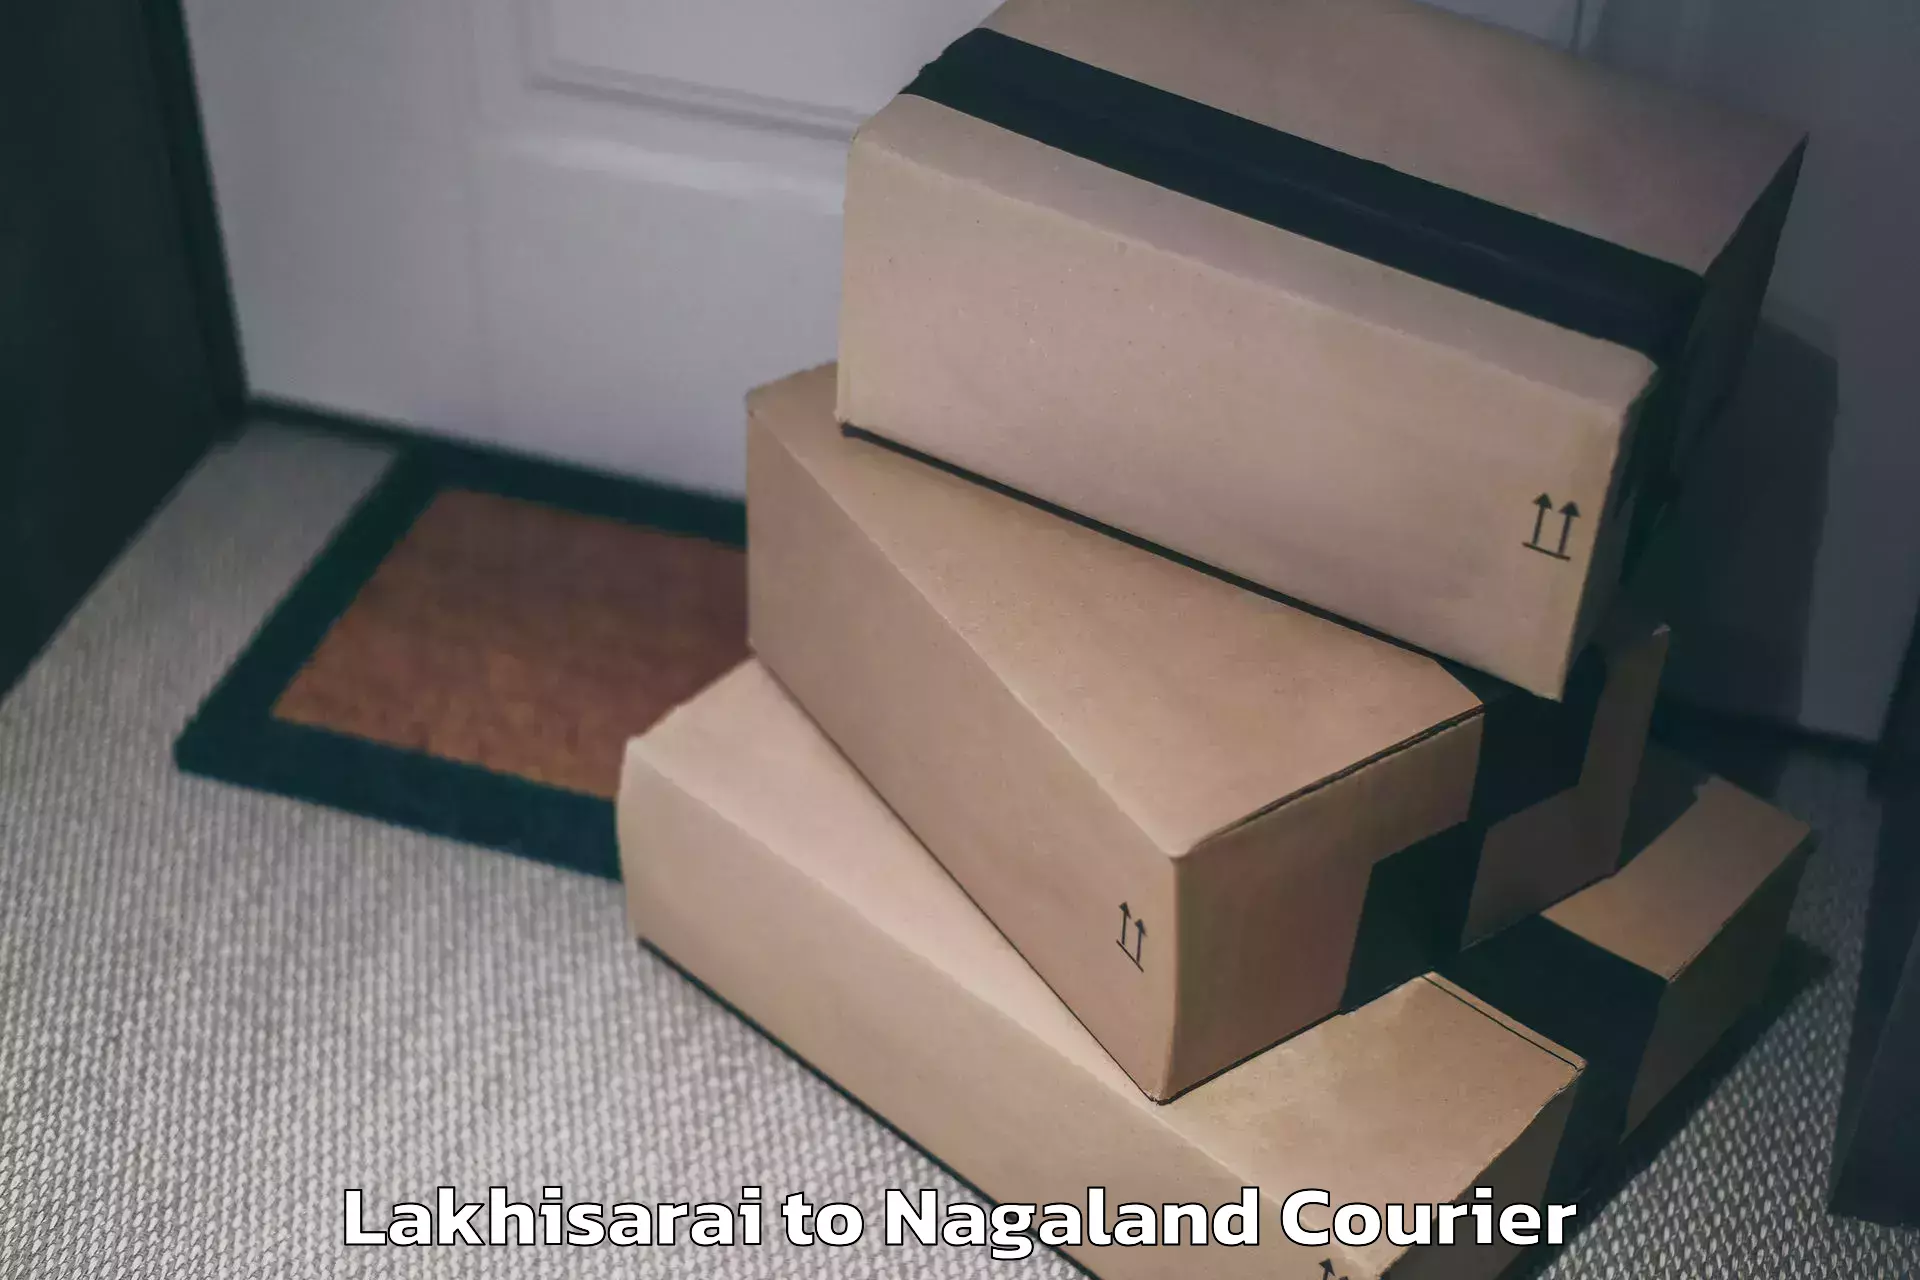 Luggage delivery providers Lakhisarai to Chumukedima